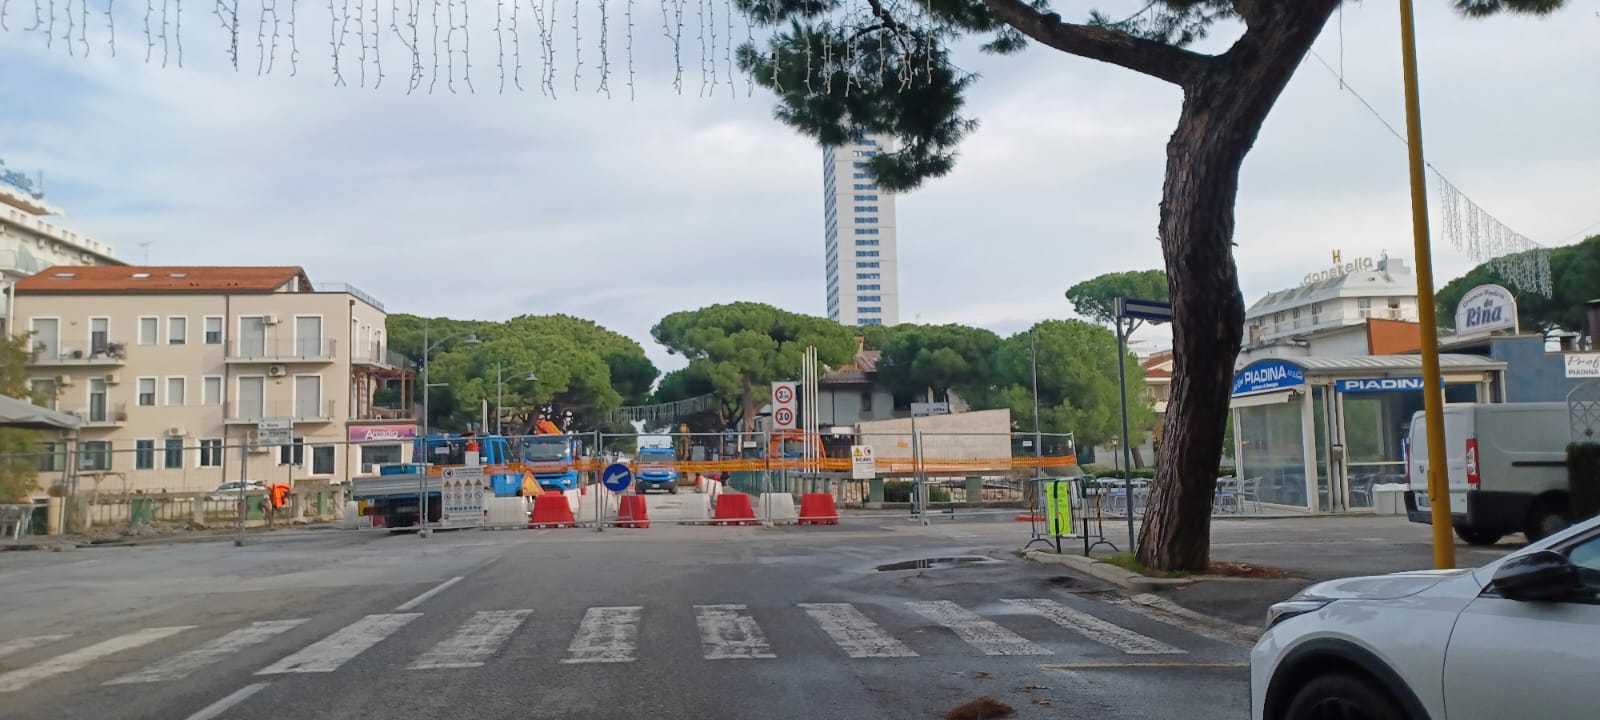 Fratelli d’Italia: “Inaccettabile avere tre ponti fuori servizio”